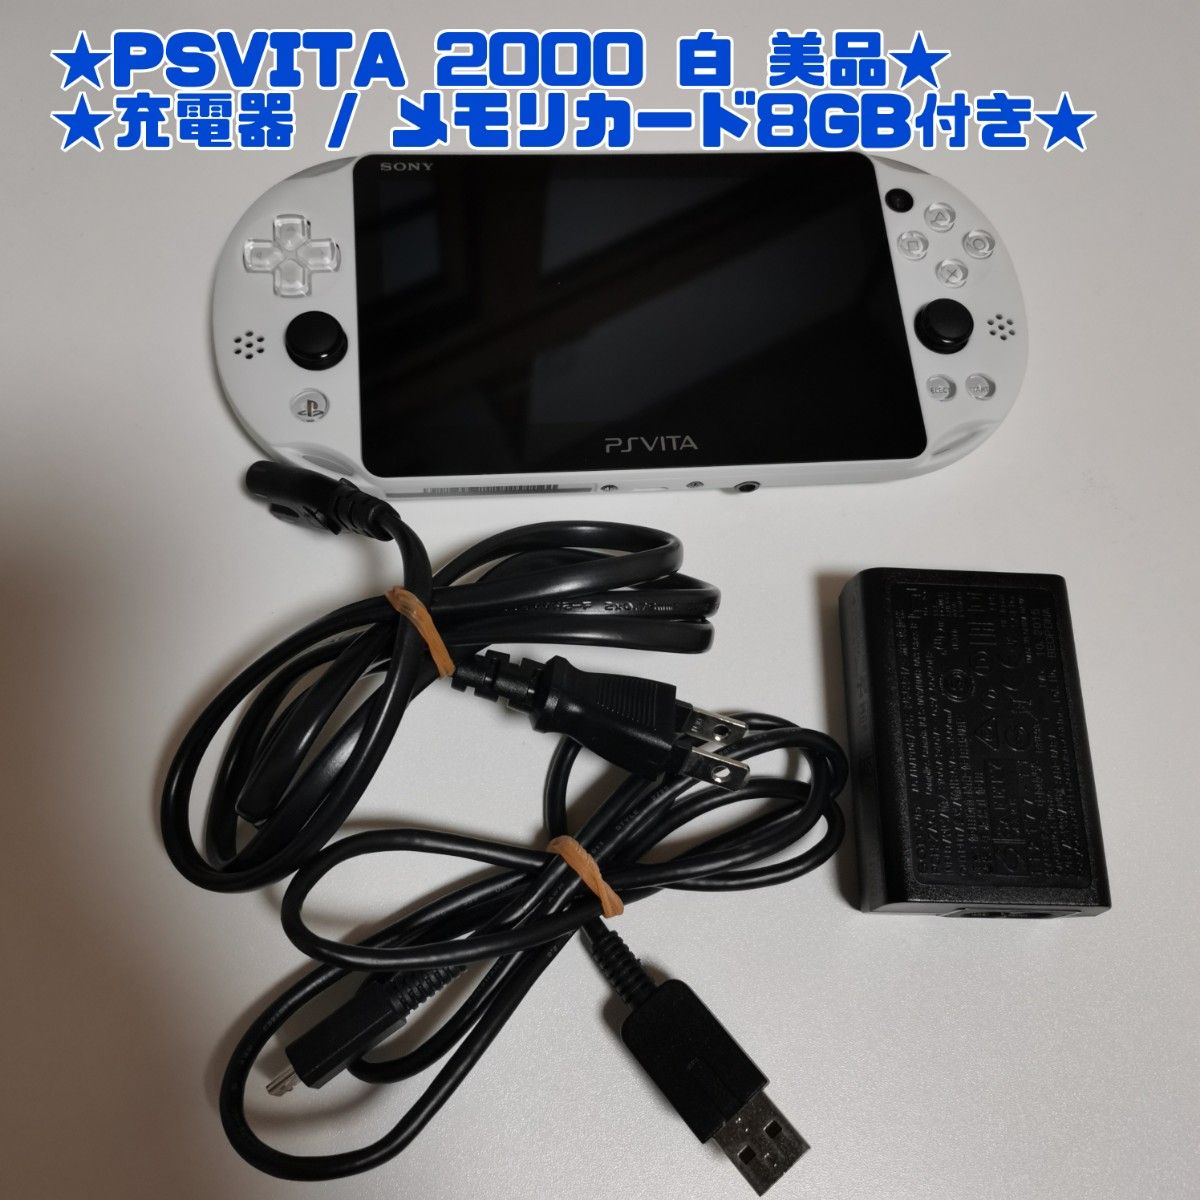 ps vita 2000 ホワイト 充電器 メモリーカード8gb | myglobaltax.com